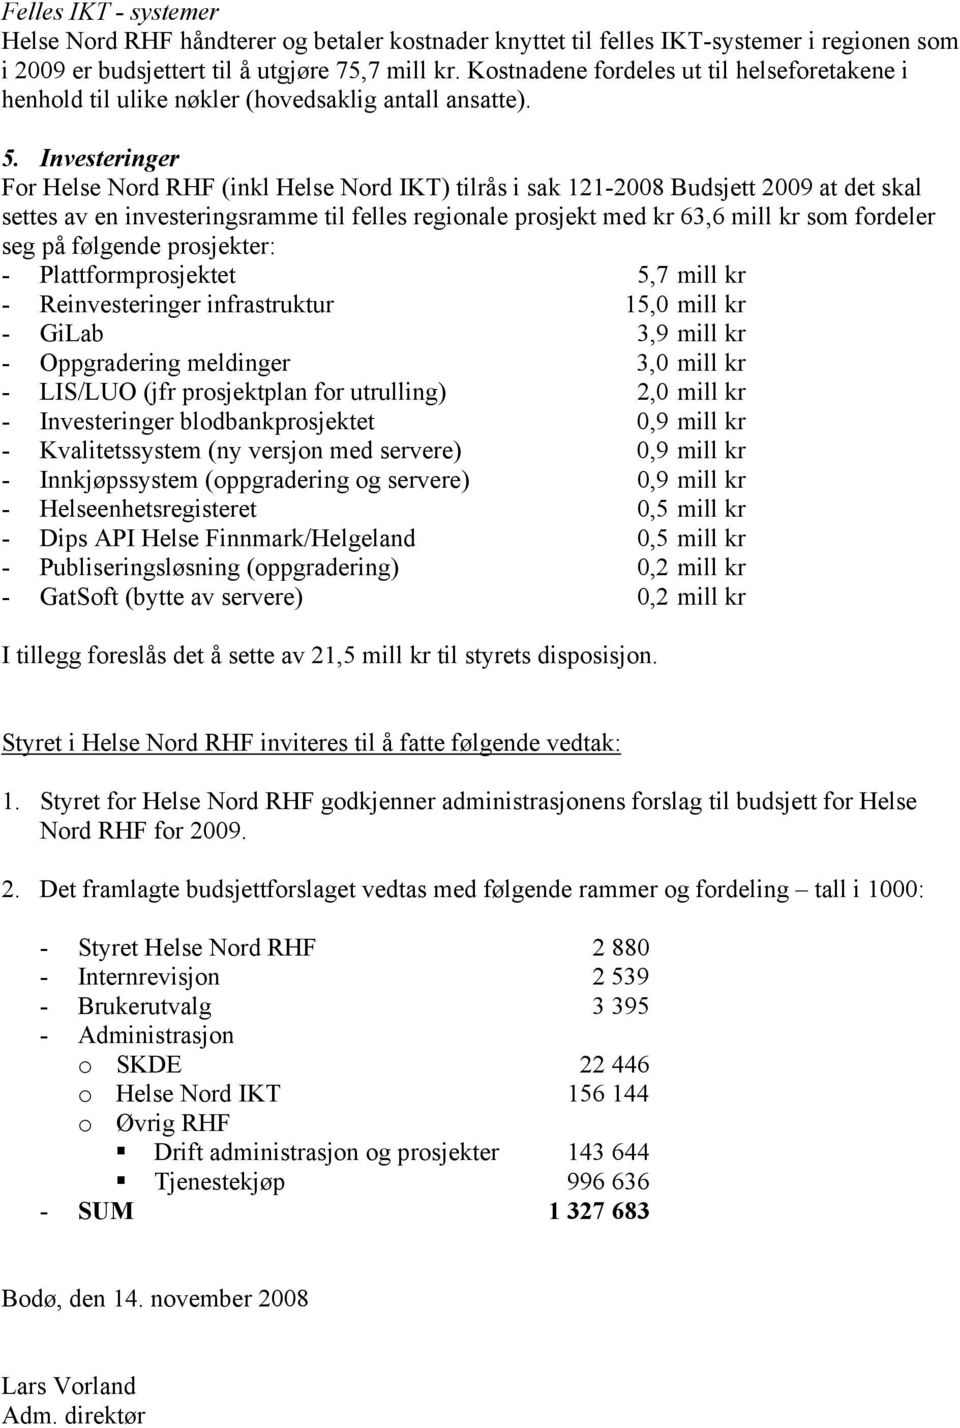 Investeringer For Helse Nord RHF (inkl Helse Nord IKT) tilrås i sak 121-2008 Budsjett 2009 at det skal settes av en investeringsramme til felles regionale prosjekt med kr 63,6 mill kr som fordeler